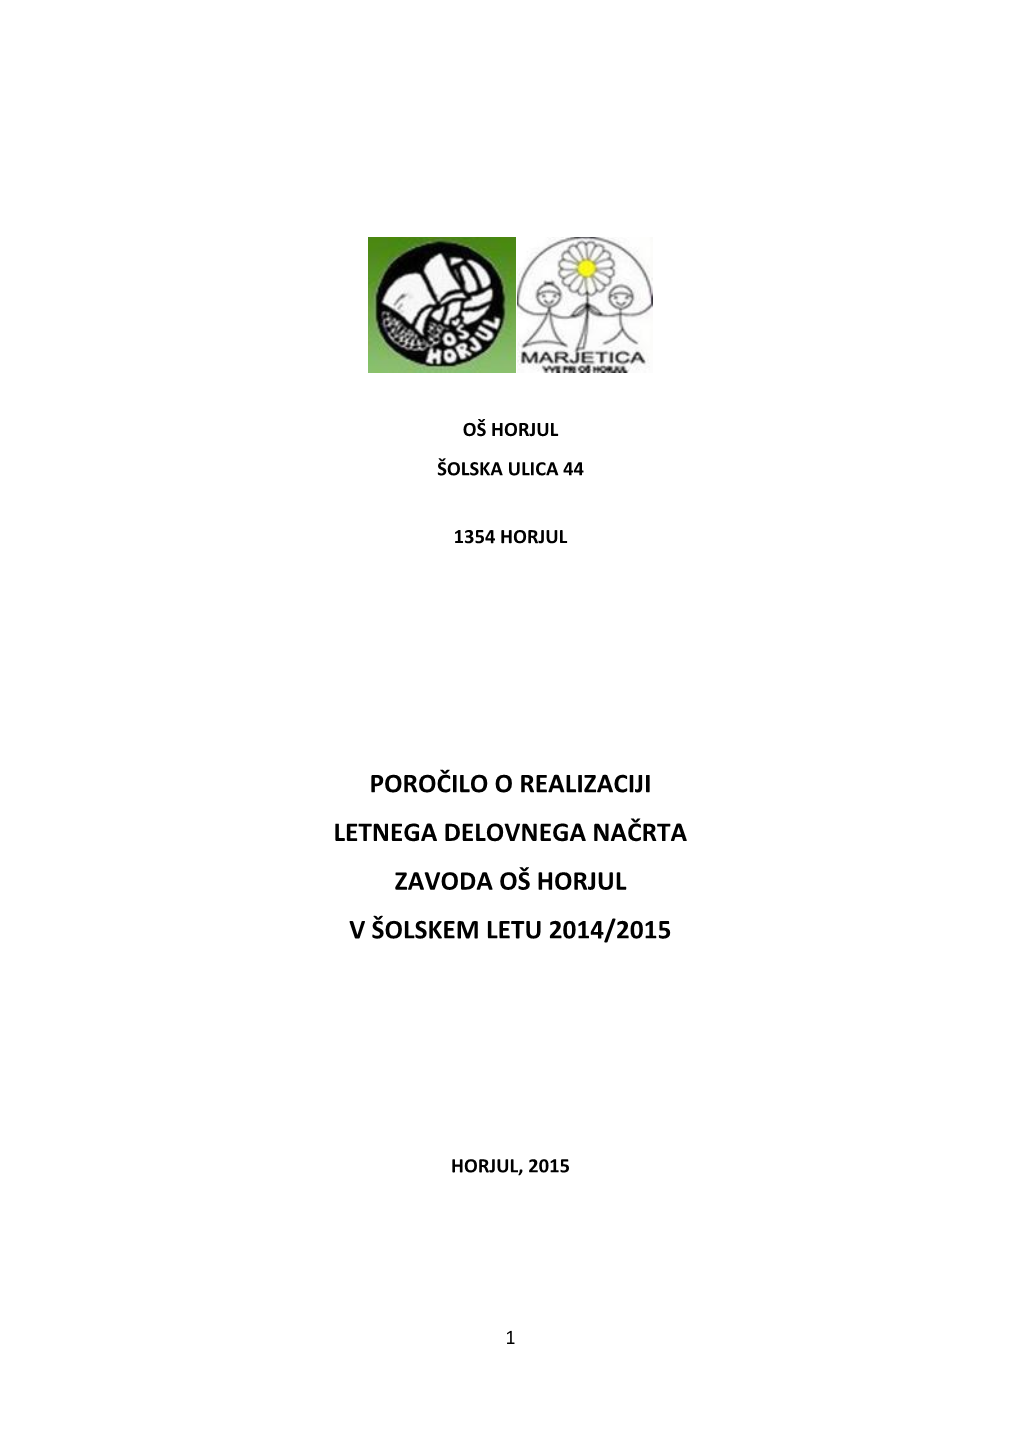 Poročilo O Realizaciji LDN 2014 15